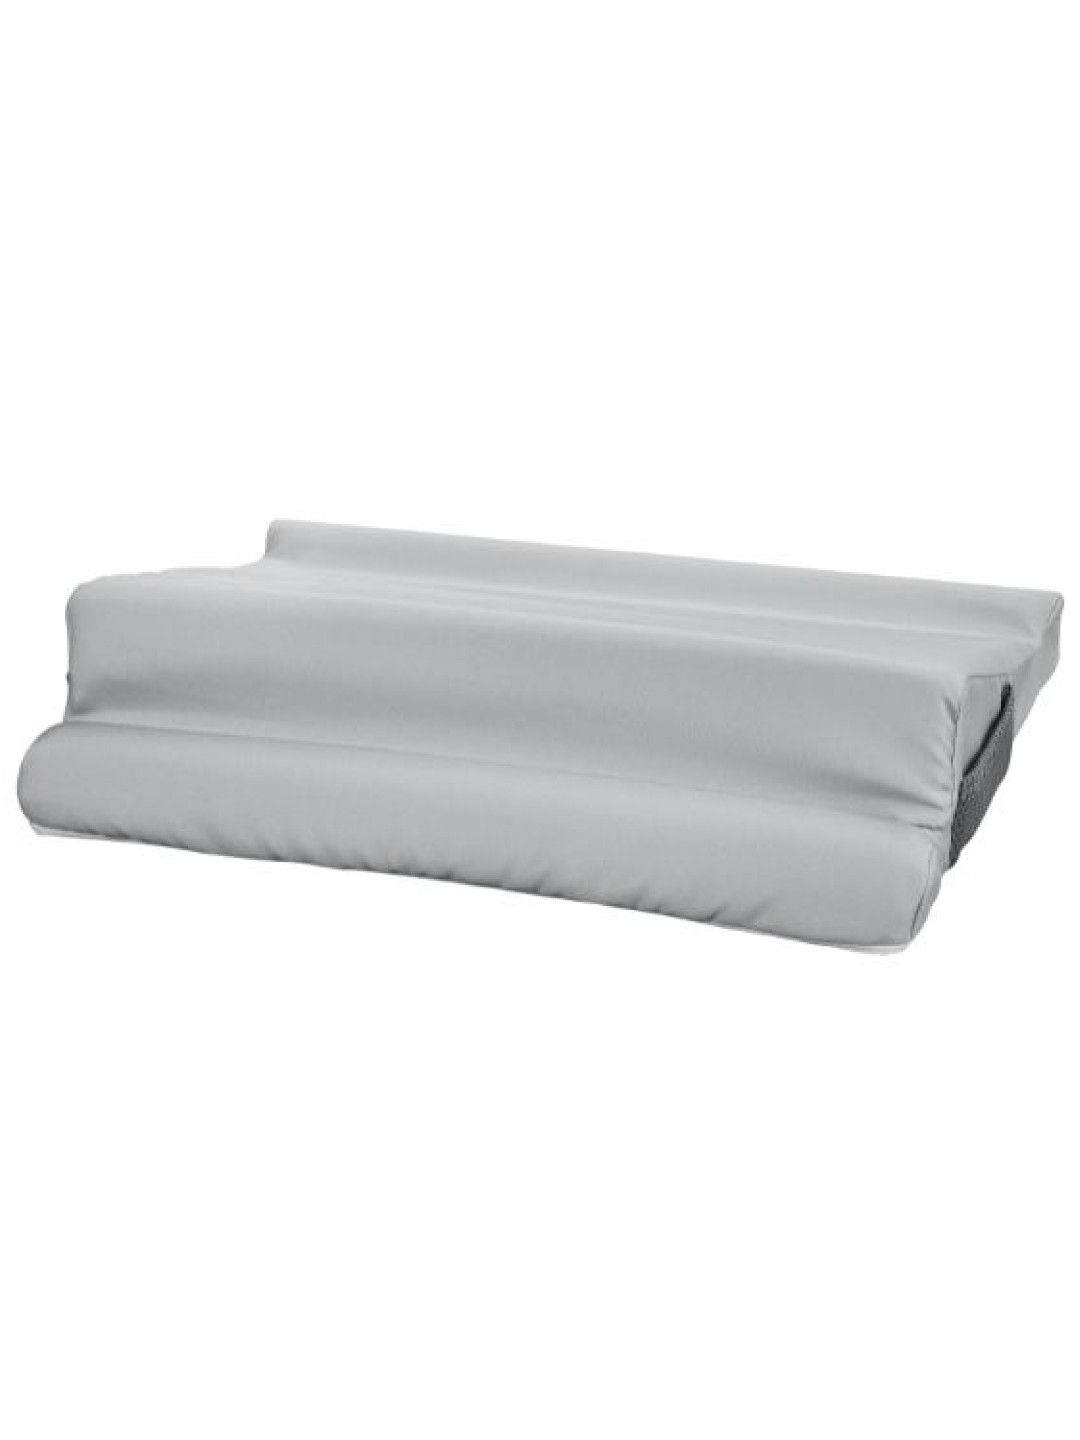 Sunbeams Lifestyle Gray Label Premium Laptop Pillow (No Color- Image 2)